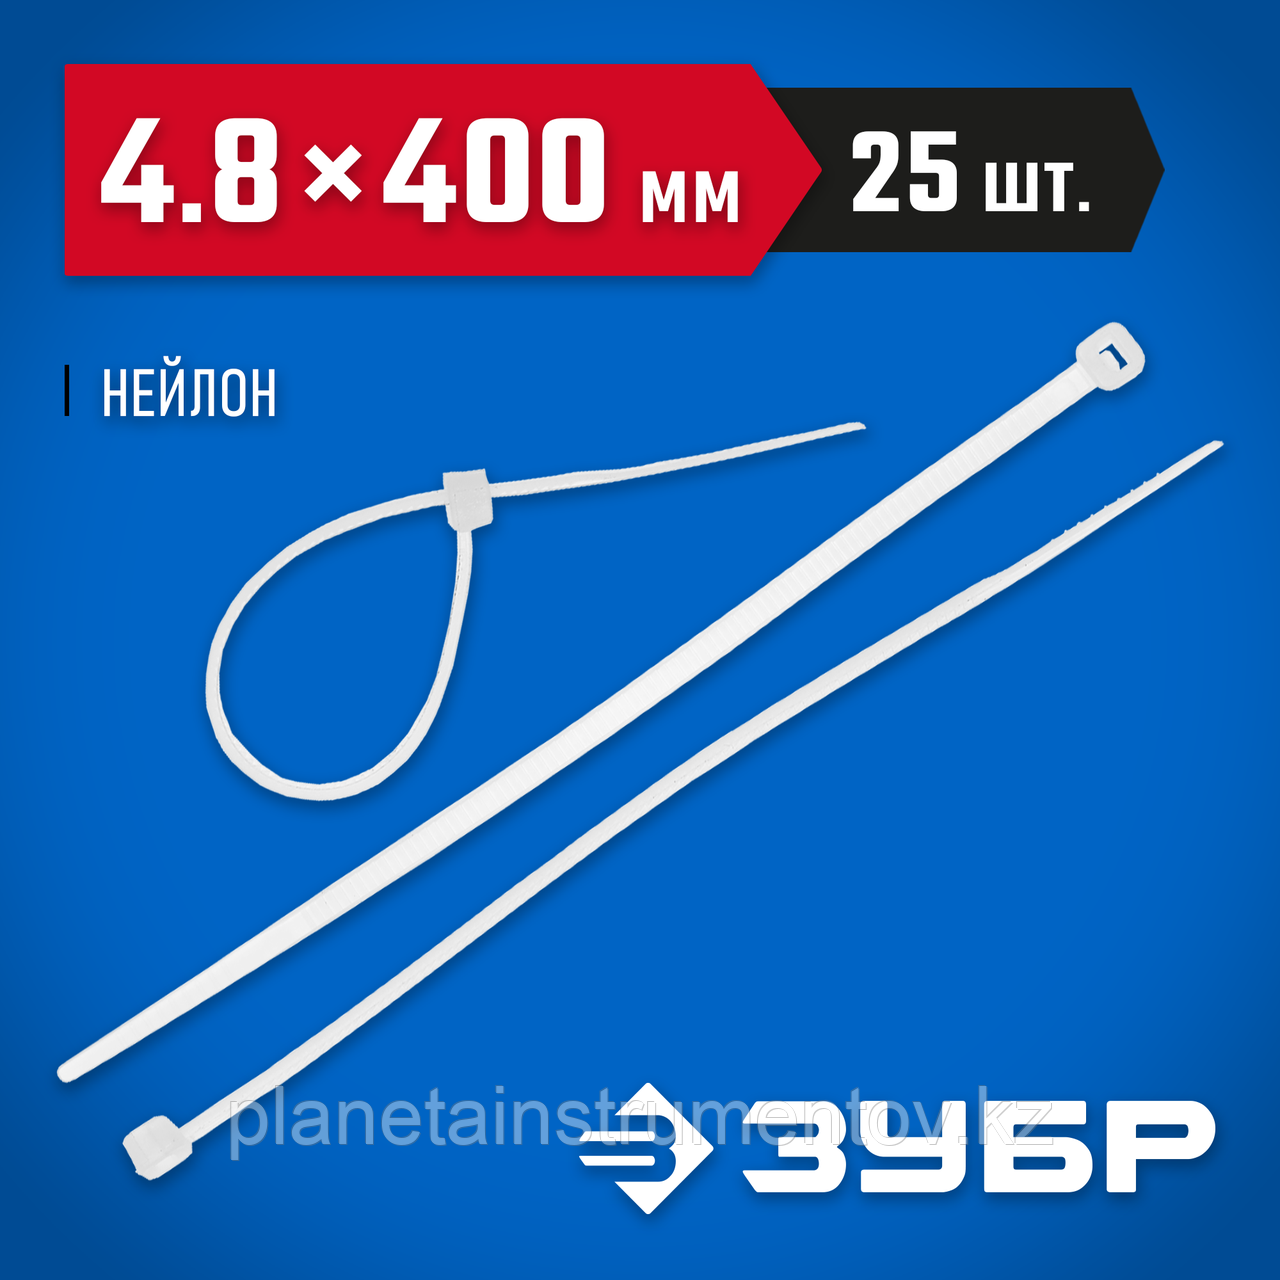 ЗУБР КС-Б2 4.8 х 400 мм, нейлон РА66, кабельные стяжки белые, 25 шт, Профессионал (4-309017-48-400)